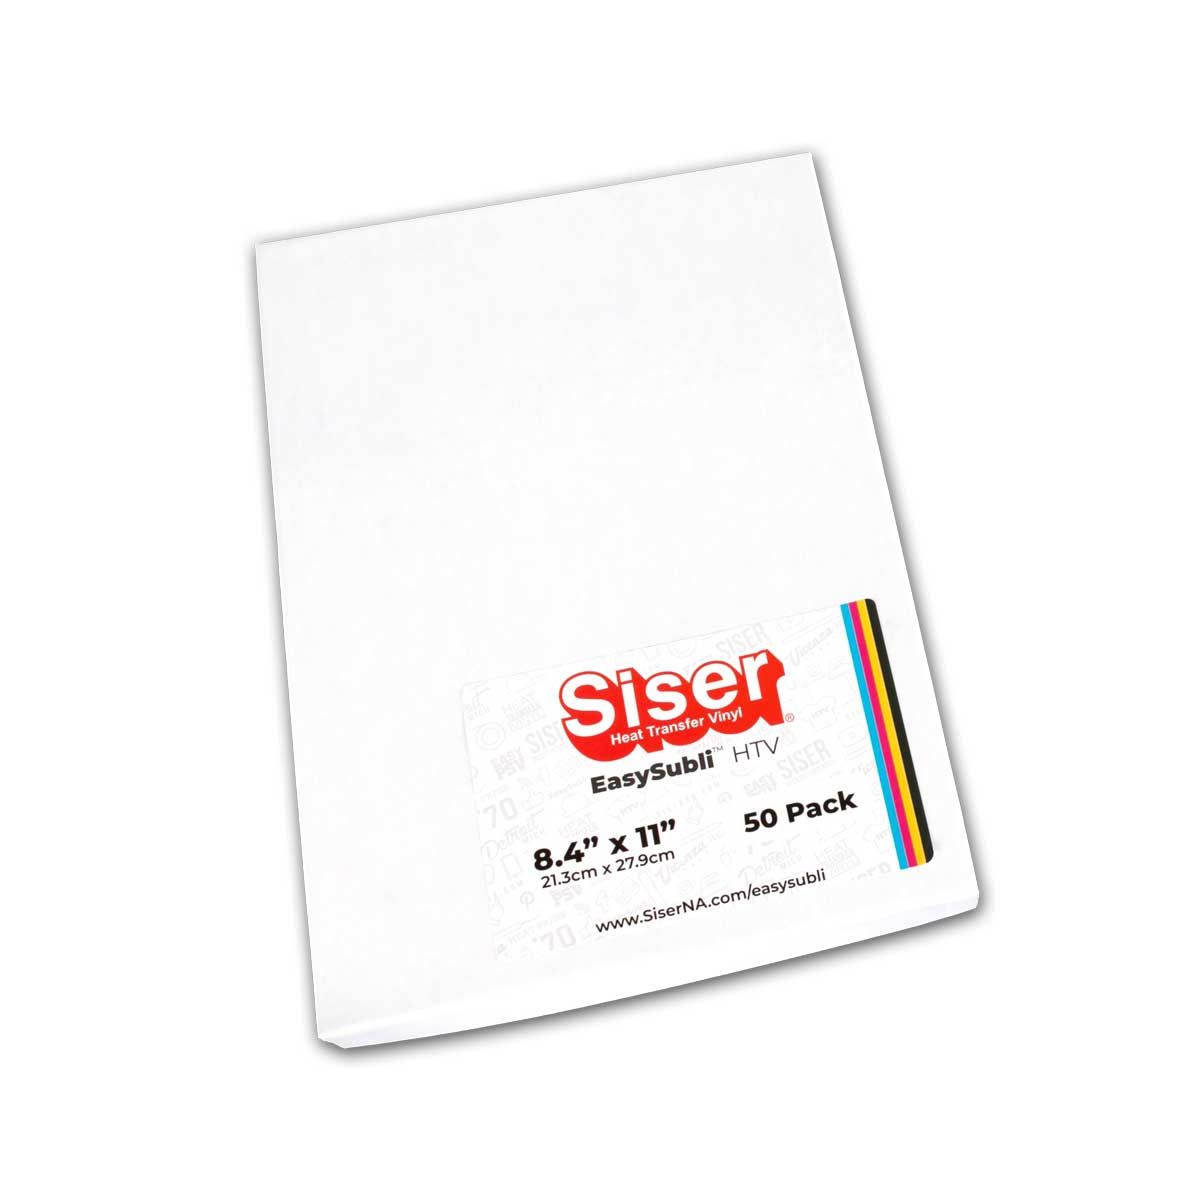 Siser EasySubli HTV - Printable Sublimation Heat Transfer Vinyl - 10 S–  Dingword